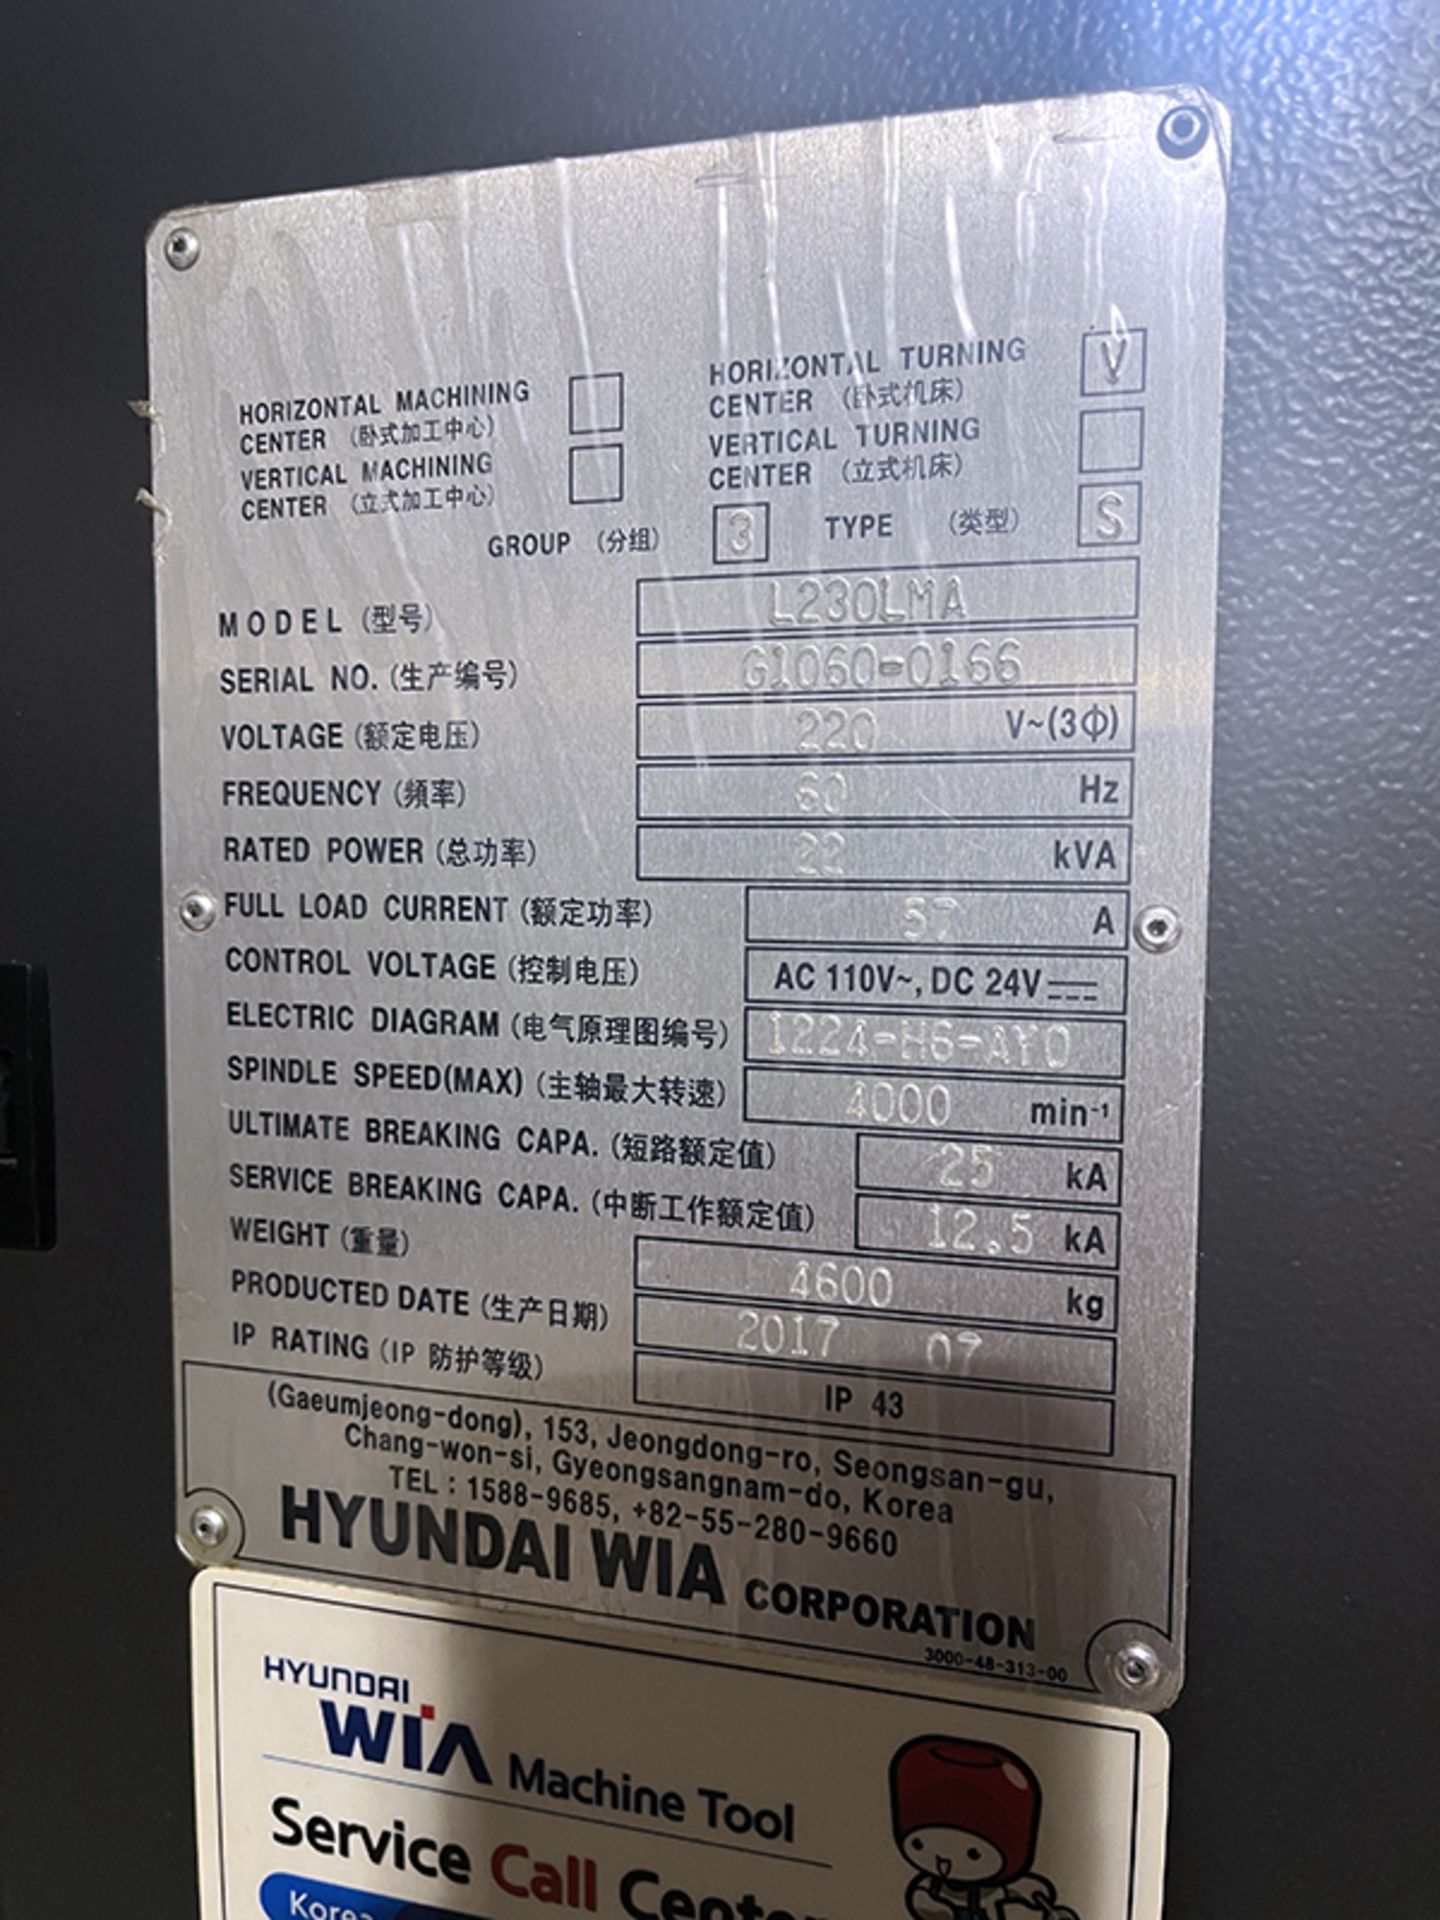 Hyundai Wia L230LMA Live Tool CNC Lathe (2017) - Image 17 of 18